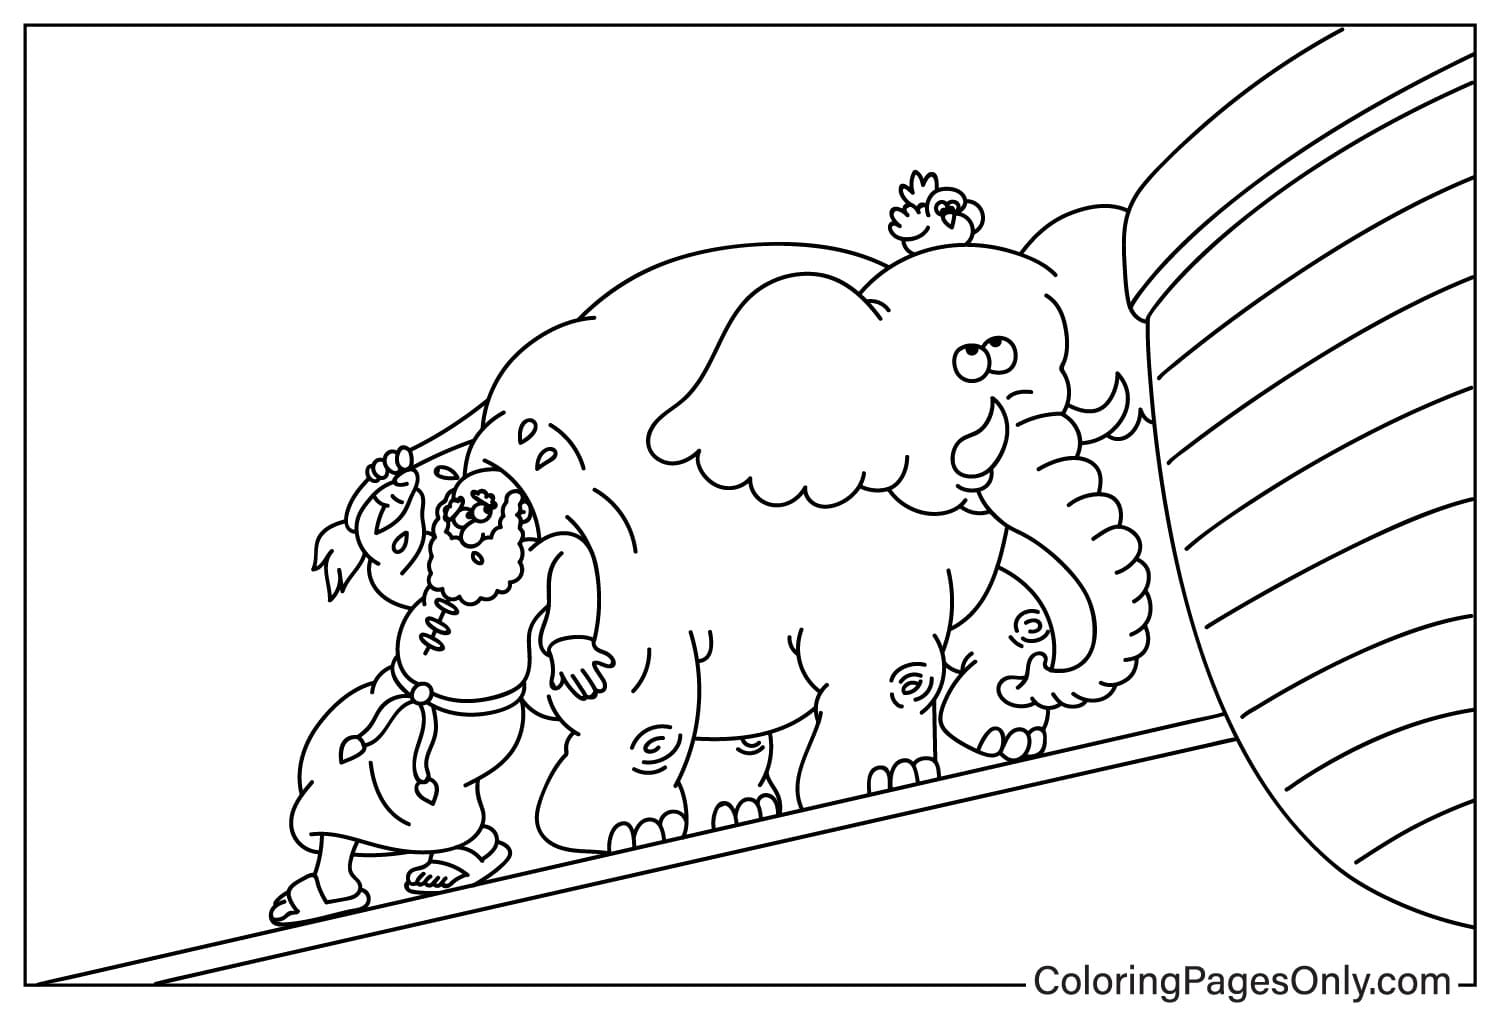 Folha para colorir do Sr. Noé colocou animais na Arca da Arca de Noé